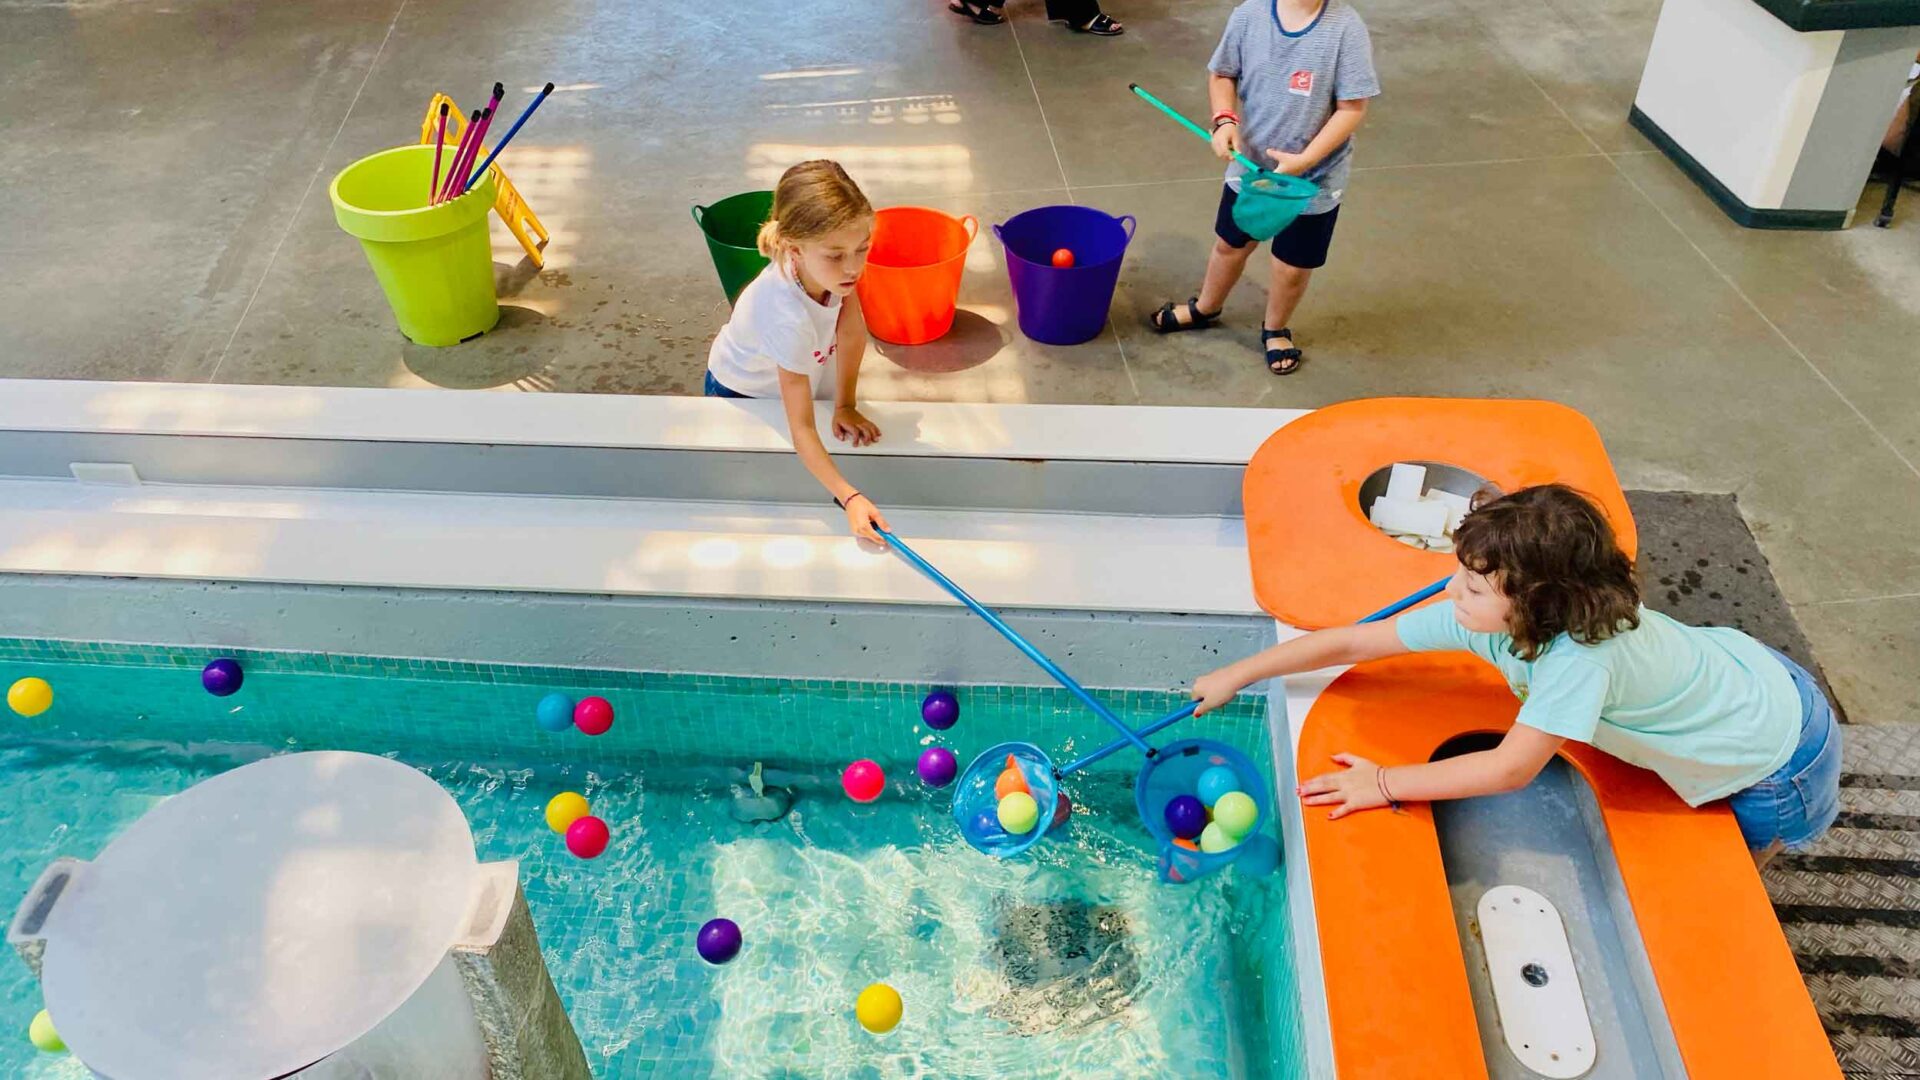 La fontana del museo Explora con bambini che giocano in estate raccogliendo le palline in plastica con dei retini da pesca